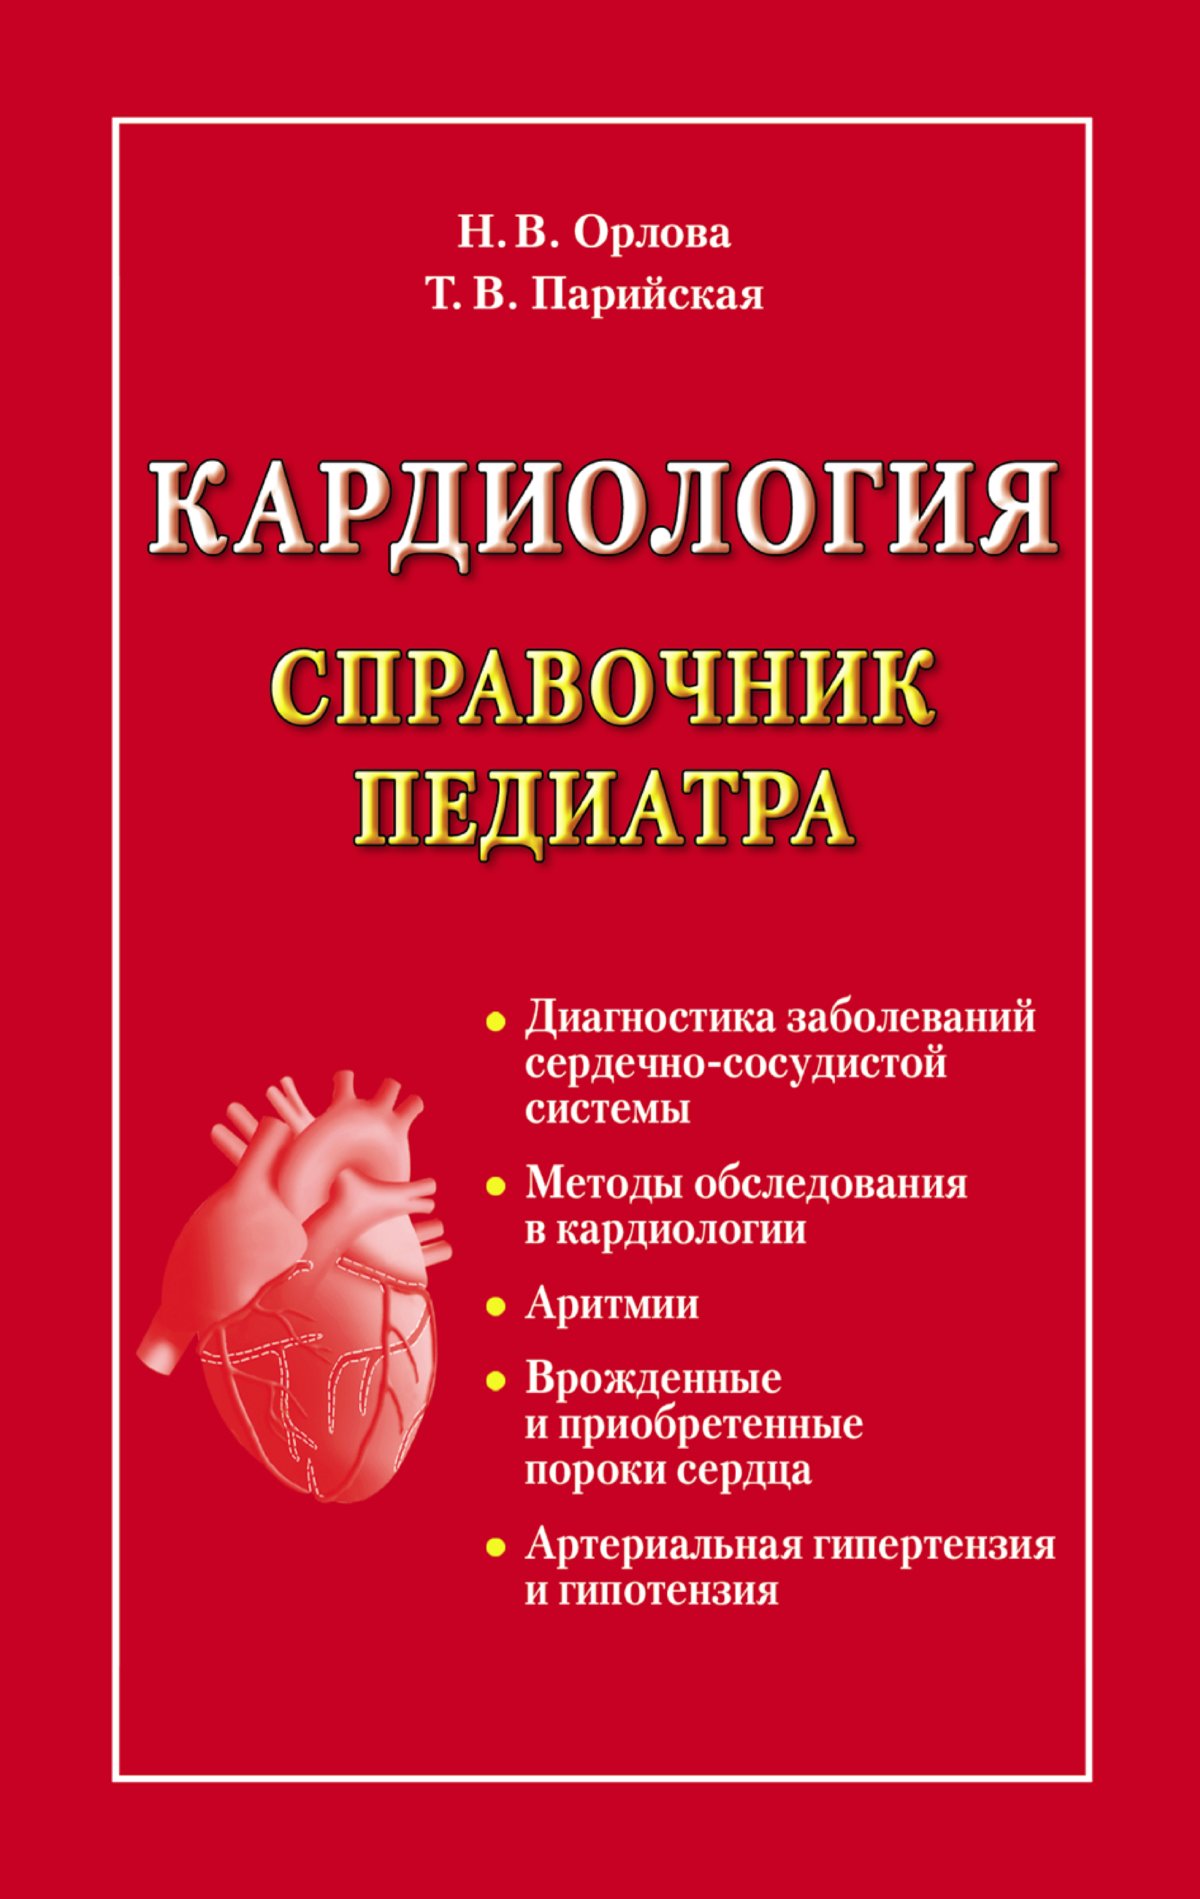 Код педиатра. Кардиология книги. Книги по детской кардиологии. Клиническая кардиология. Клиническая кардиология книга.